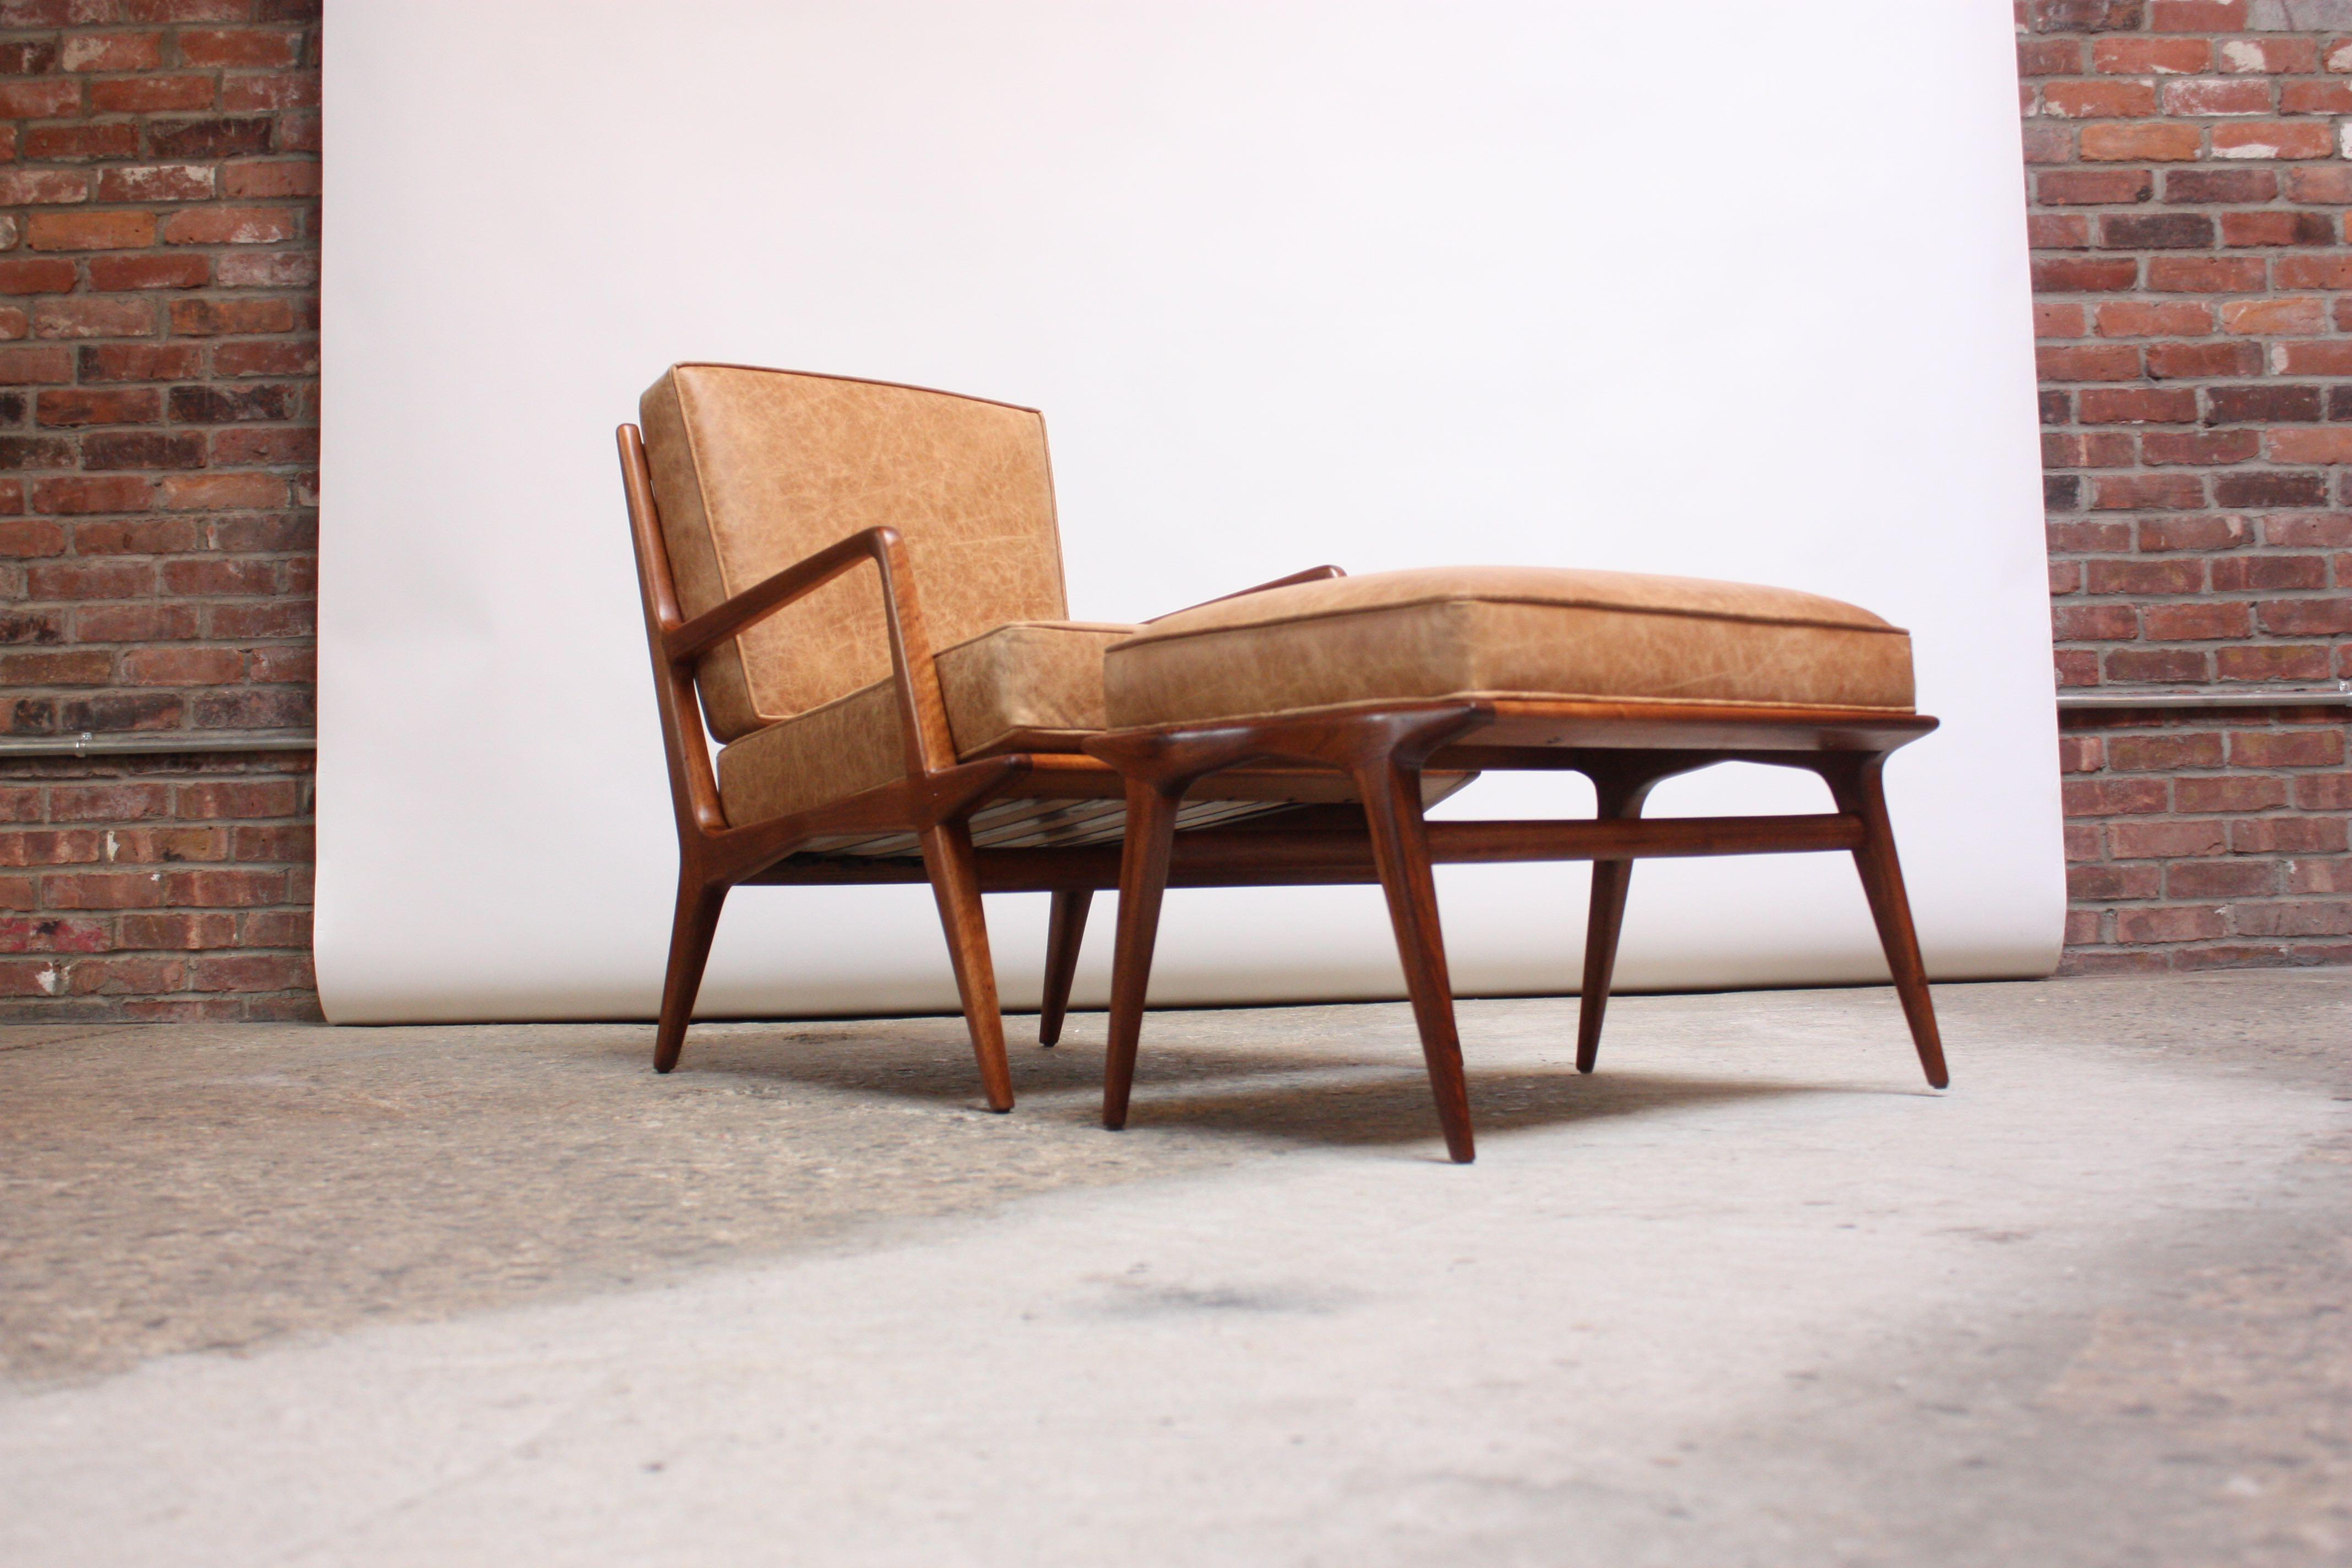 italienischer Sessel und Ottomane aus Nussbaumholz aus den 1950er Jahren, entworfen von Carlo de Carli für M. Singer & Sons. Mit einem stark modellierten Rahmen mit Leiterlehne, klaren Linien und gespreizten Beinen. Neu gepolstert in braunem Leder